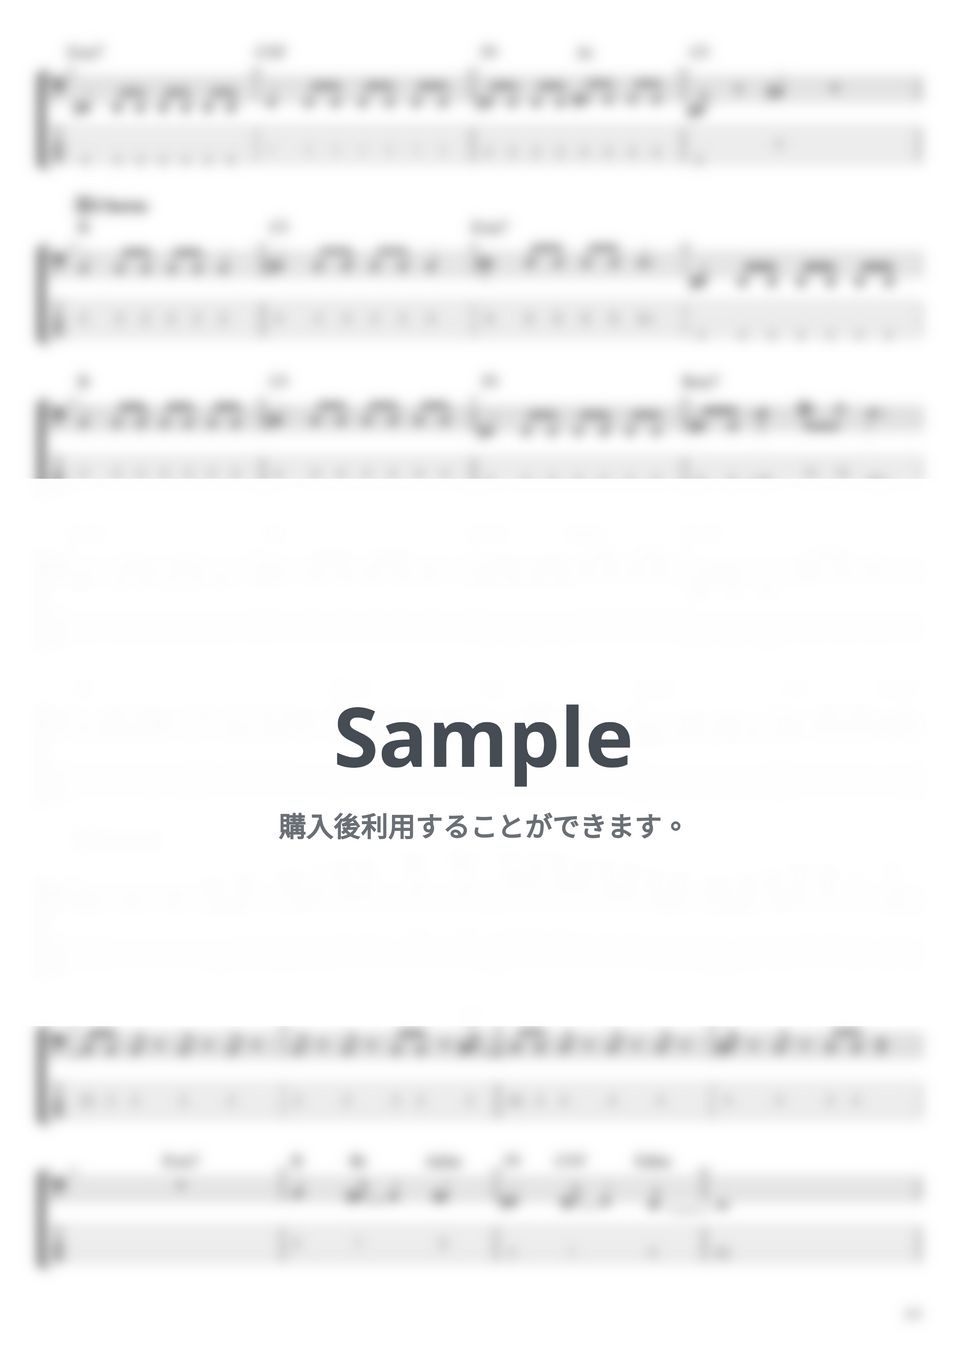 ヨルシカ - 夕凪、某、花惑い (ベース Tab譜 5弦) by T's bass score